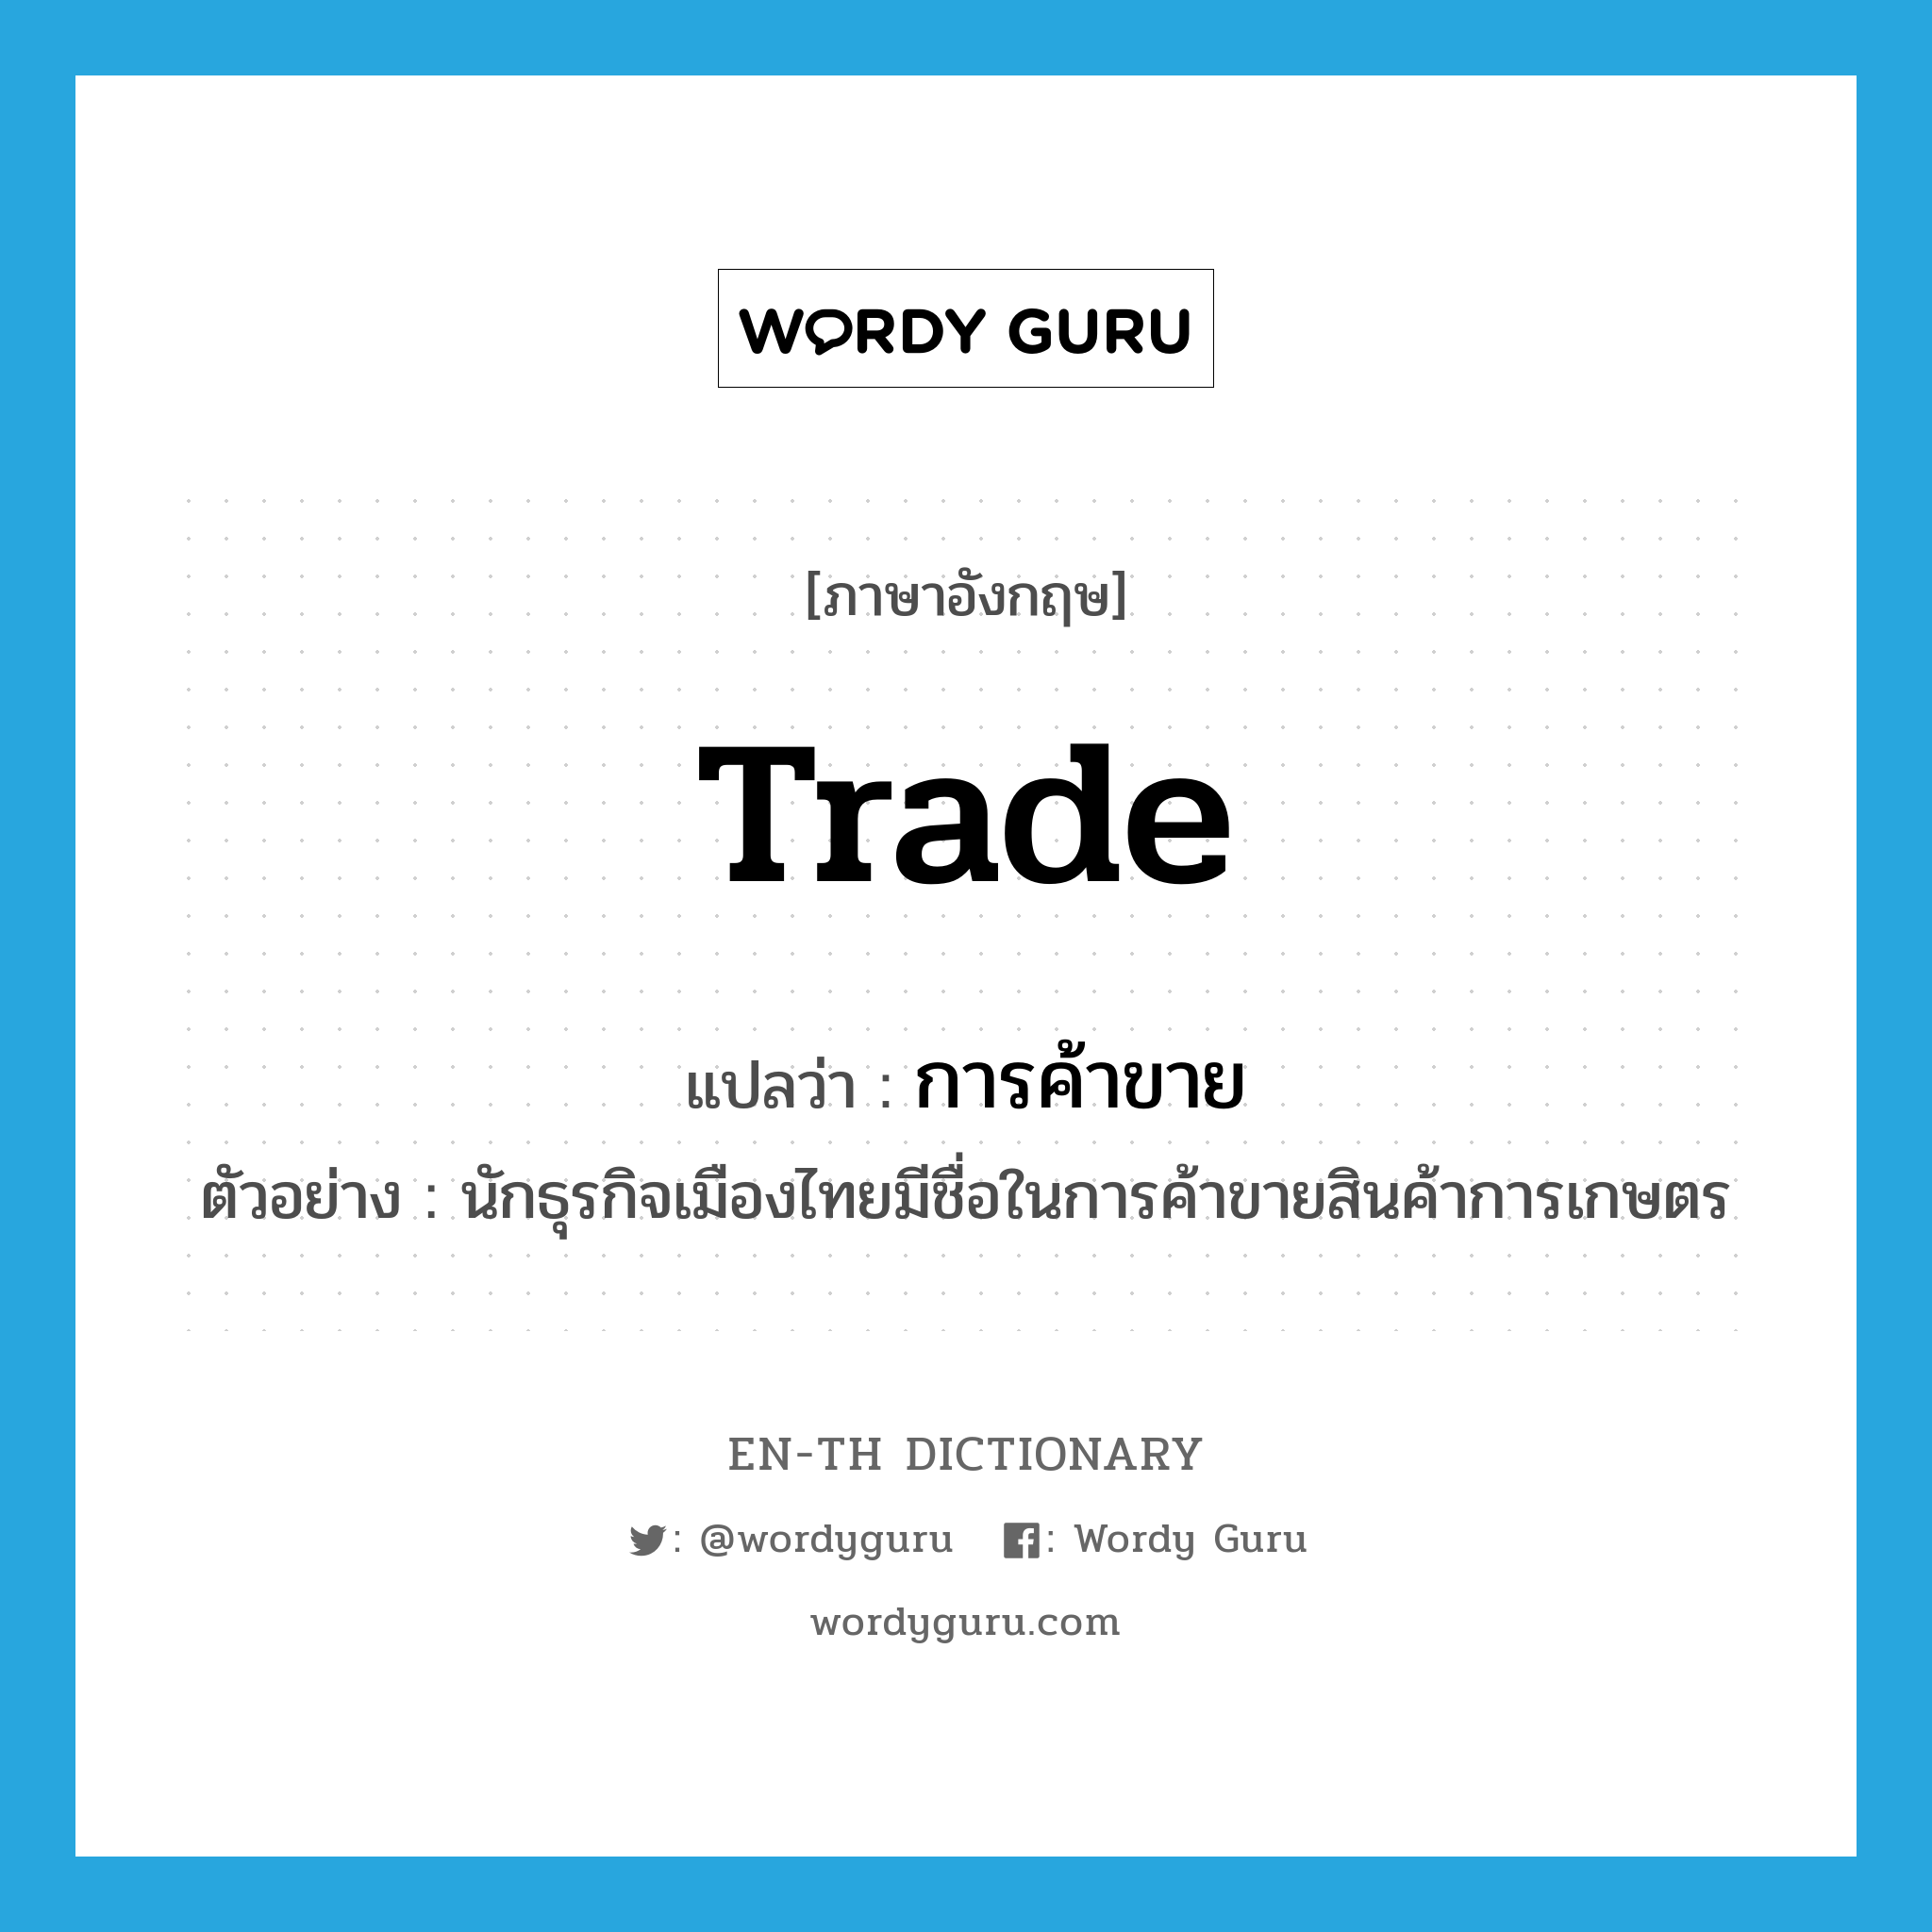 การค้าขาย ภาษาอังกฤษ?, คำศัพท์ภาษาอังกฤษ การค้าขาย แปลว่า trade ประเภท N ตัวอย่าง นักธุรกิจเมืองไทยมีชื่อในการค้าขายสินค้าการเกษตร หมวด N